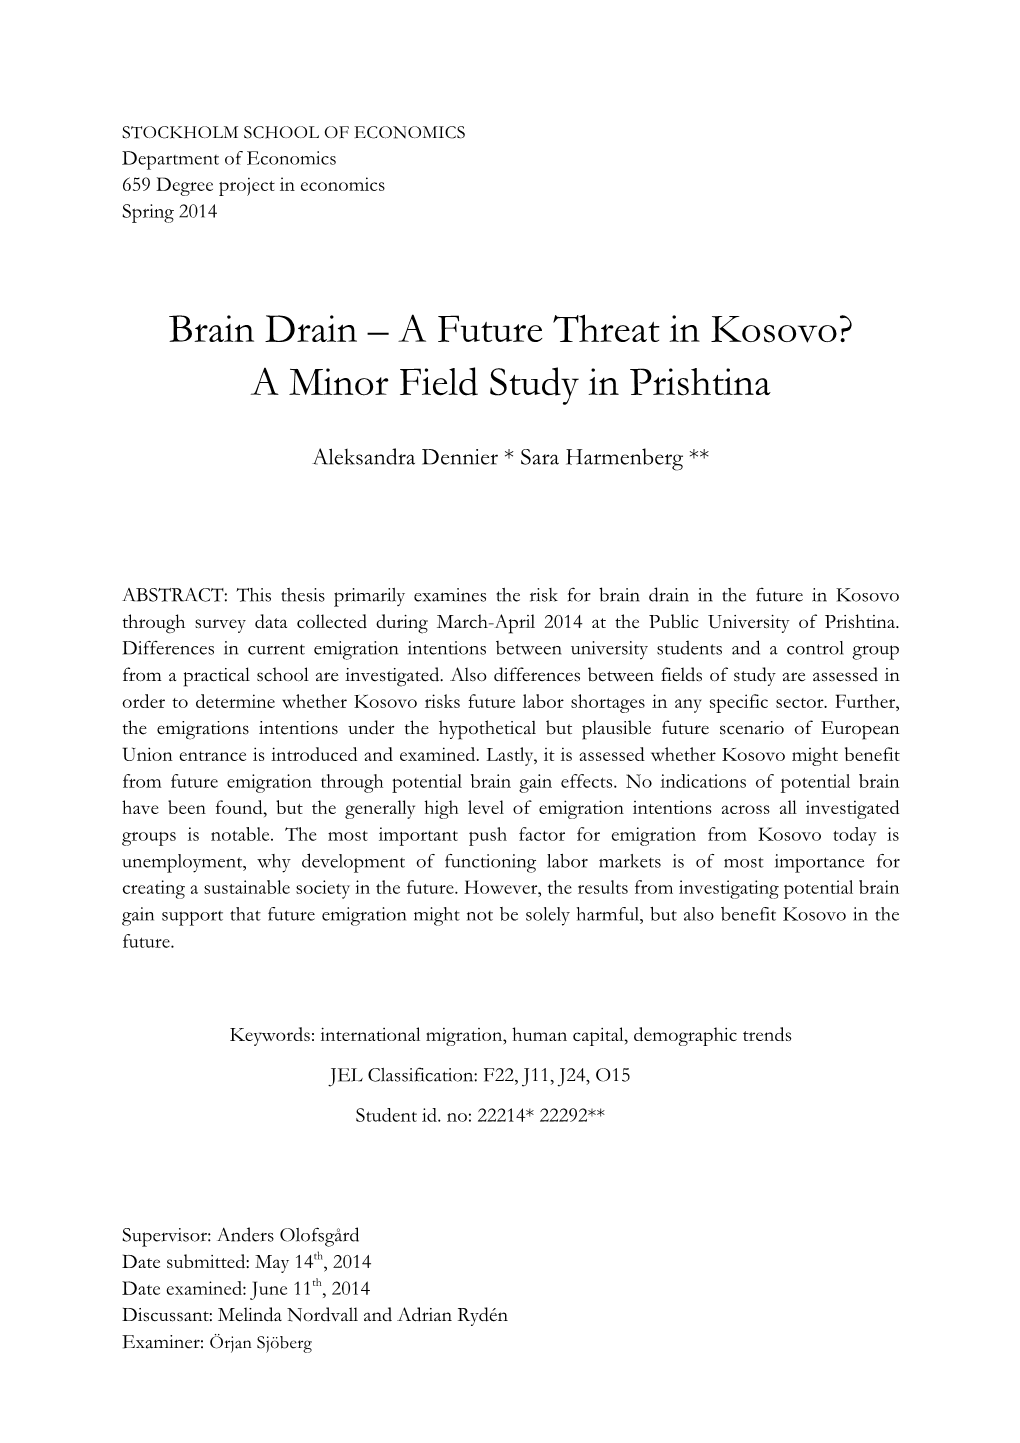 Brain Drain – a Future Threat in Kosovo? a Minor Field Study in Prishtina